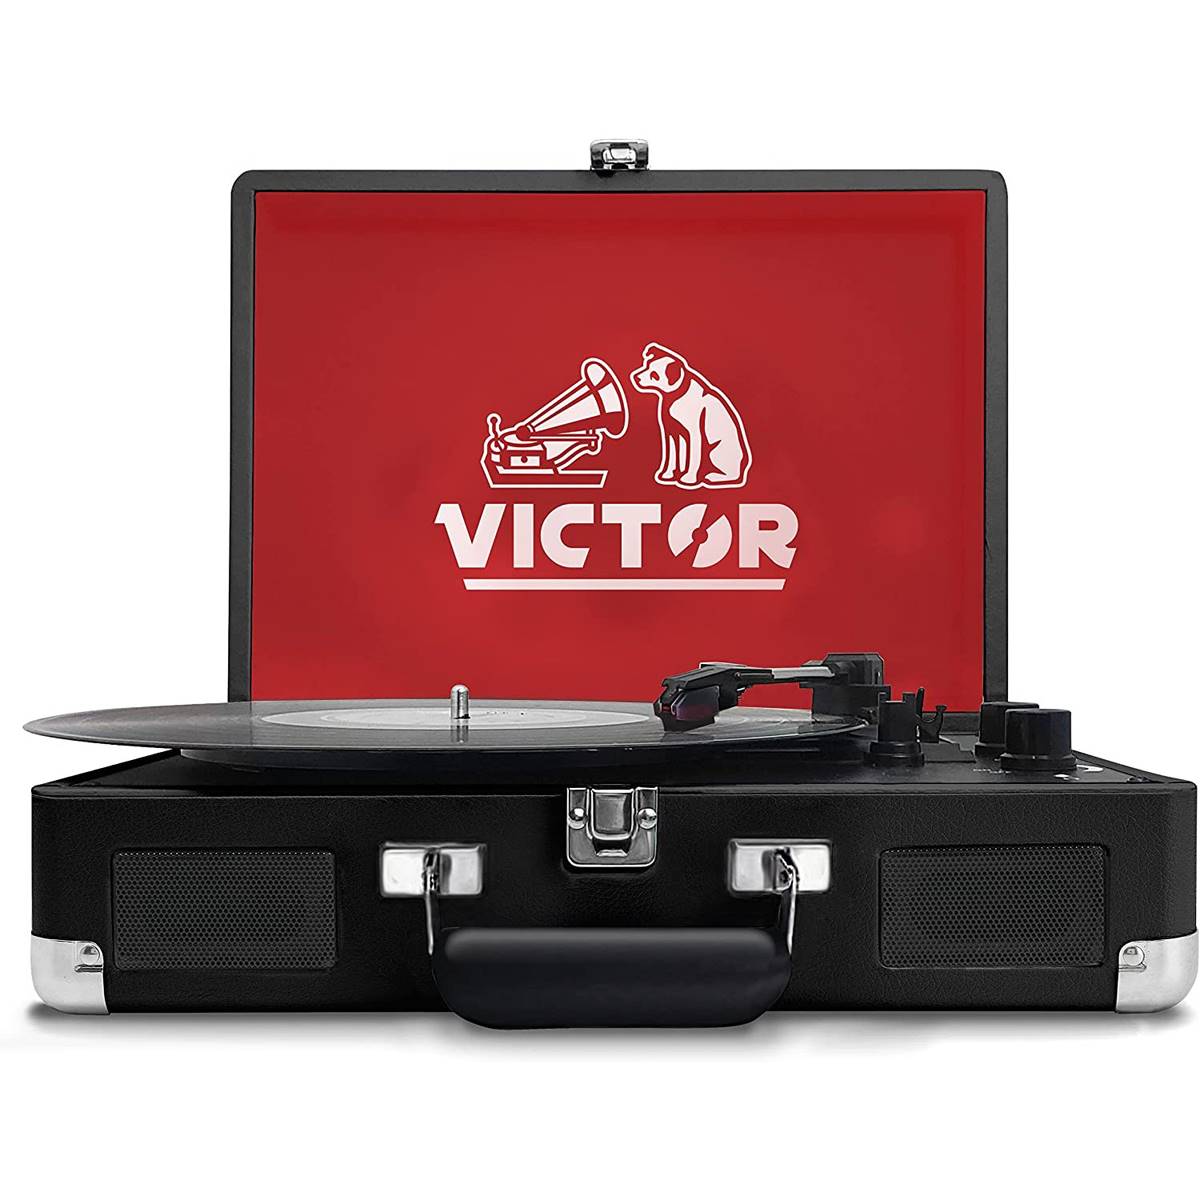 Victor Bluetooth Suitcase Turntable - Black